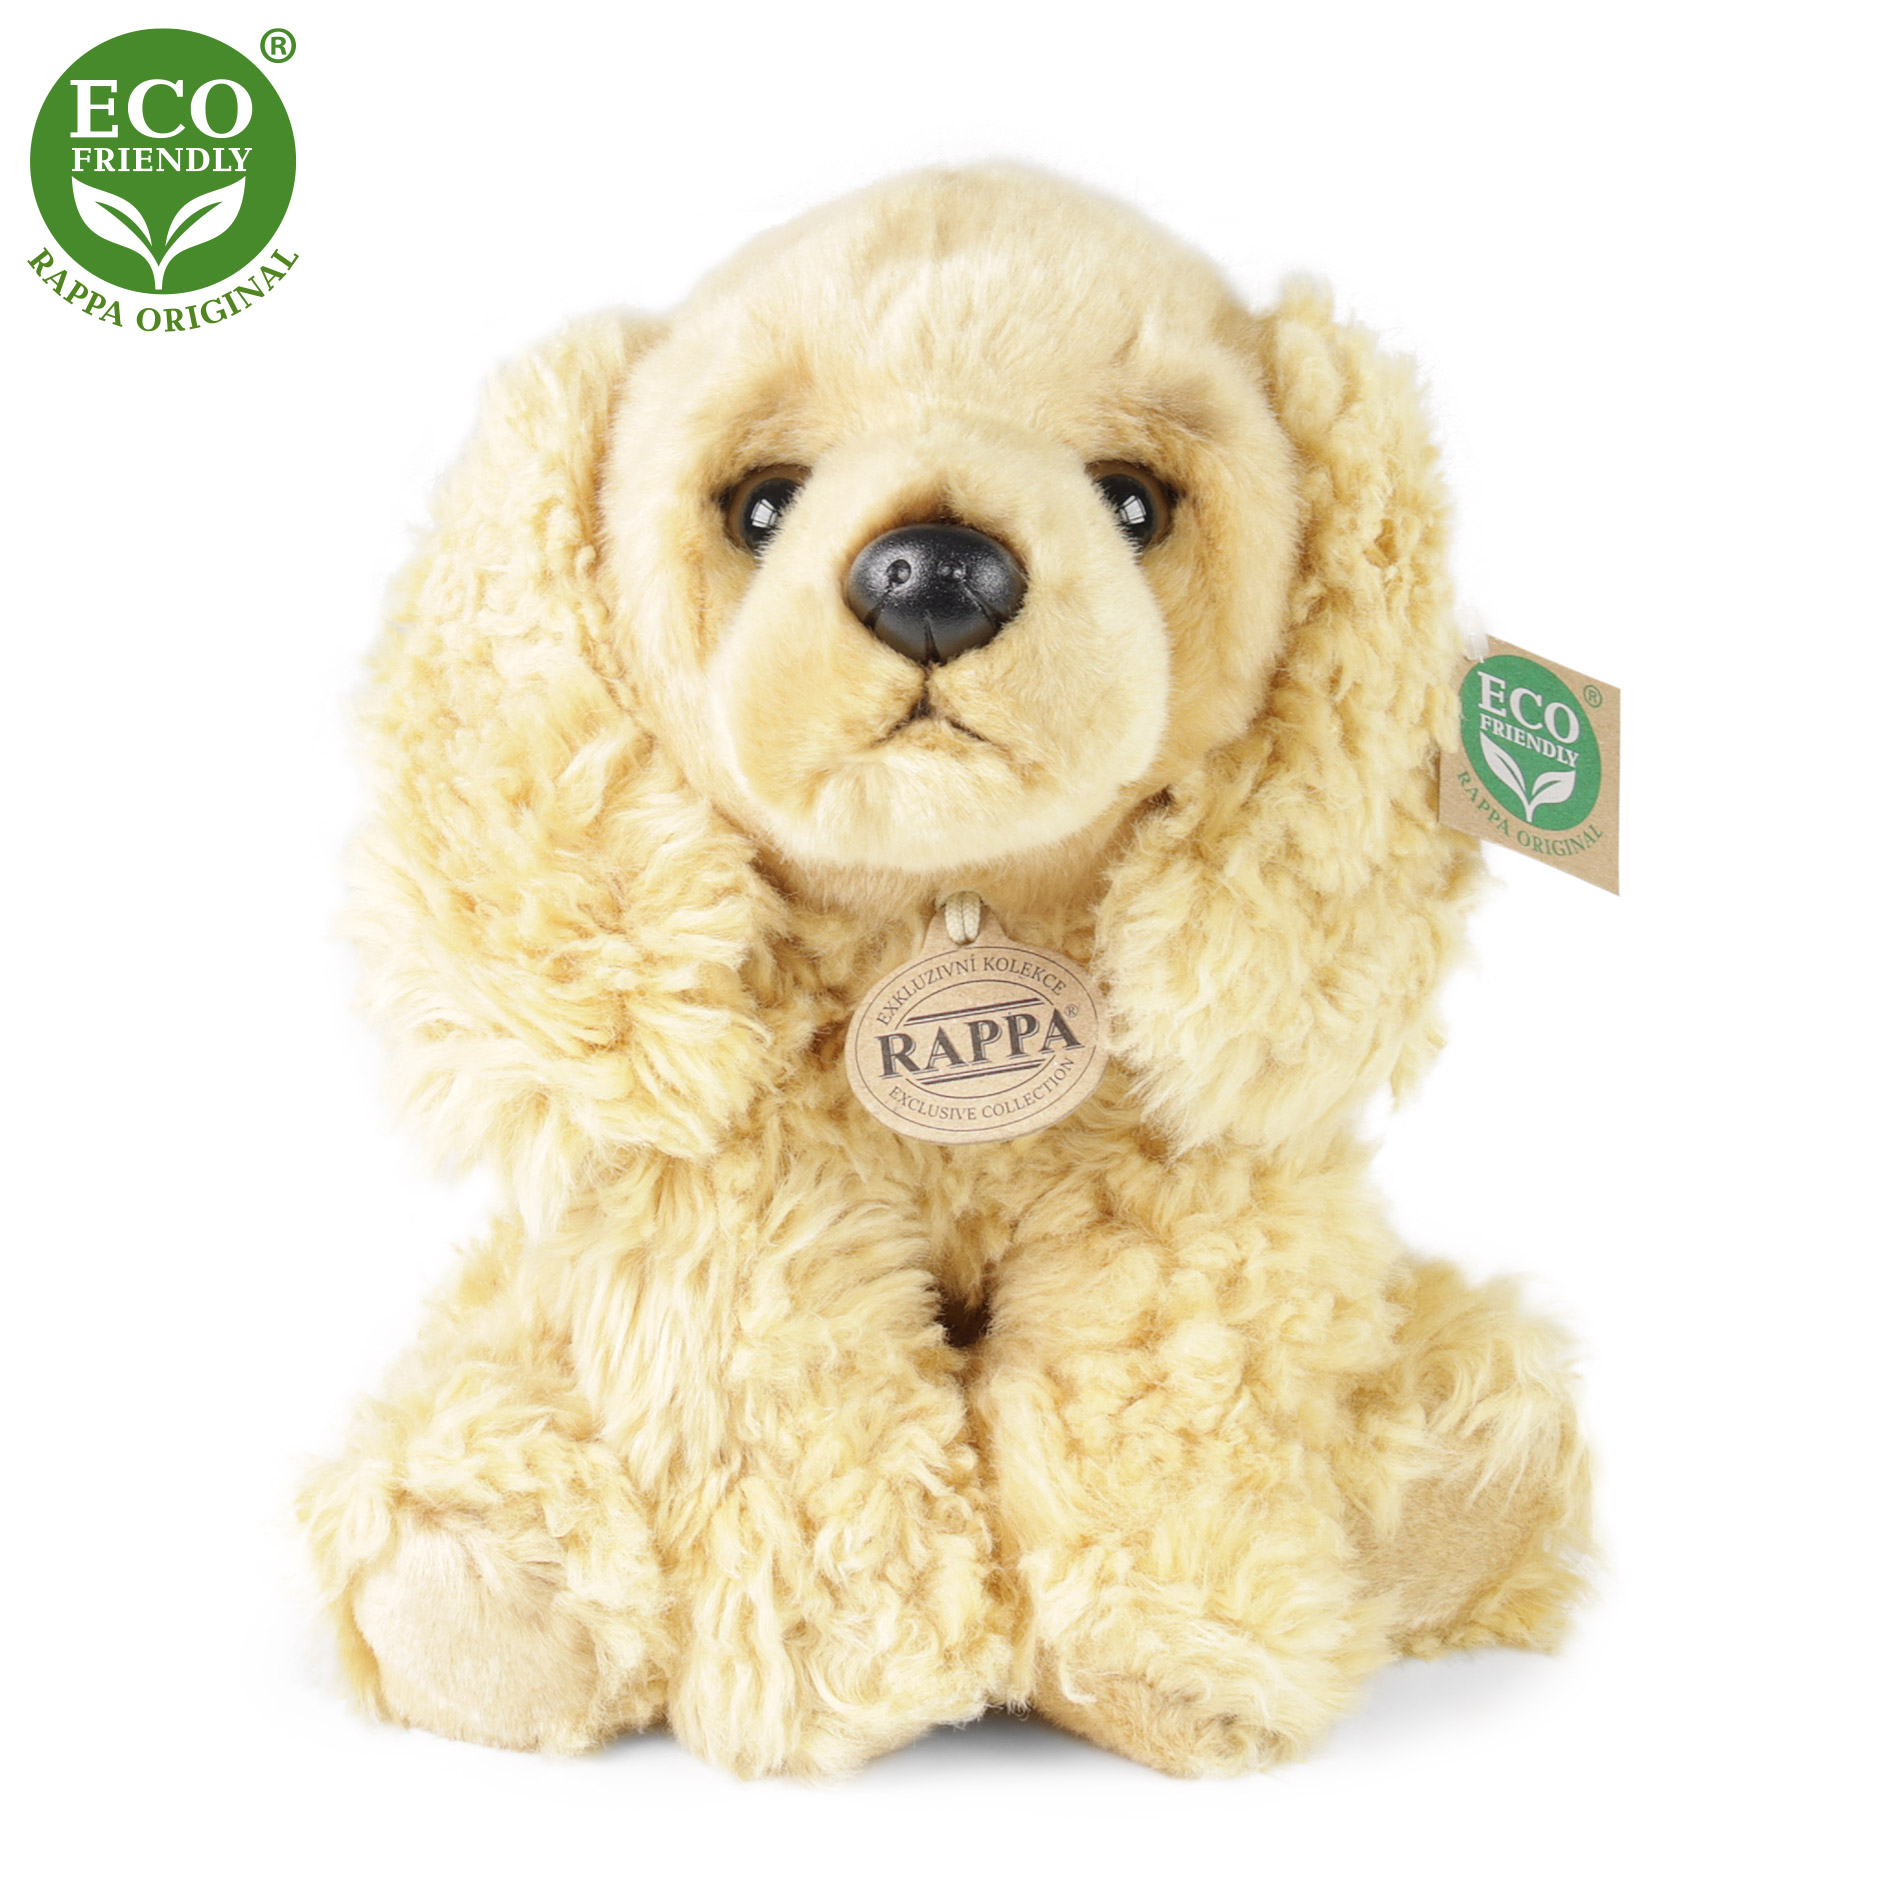 Rappa Eco-Friendly - Plyšový pes kokršpaněl sedící 30 cm